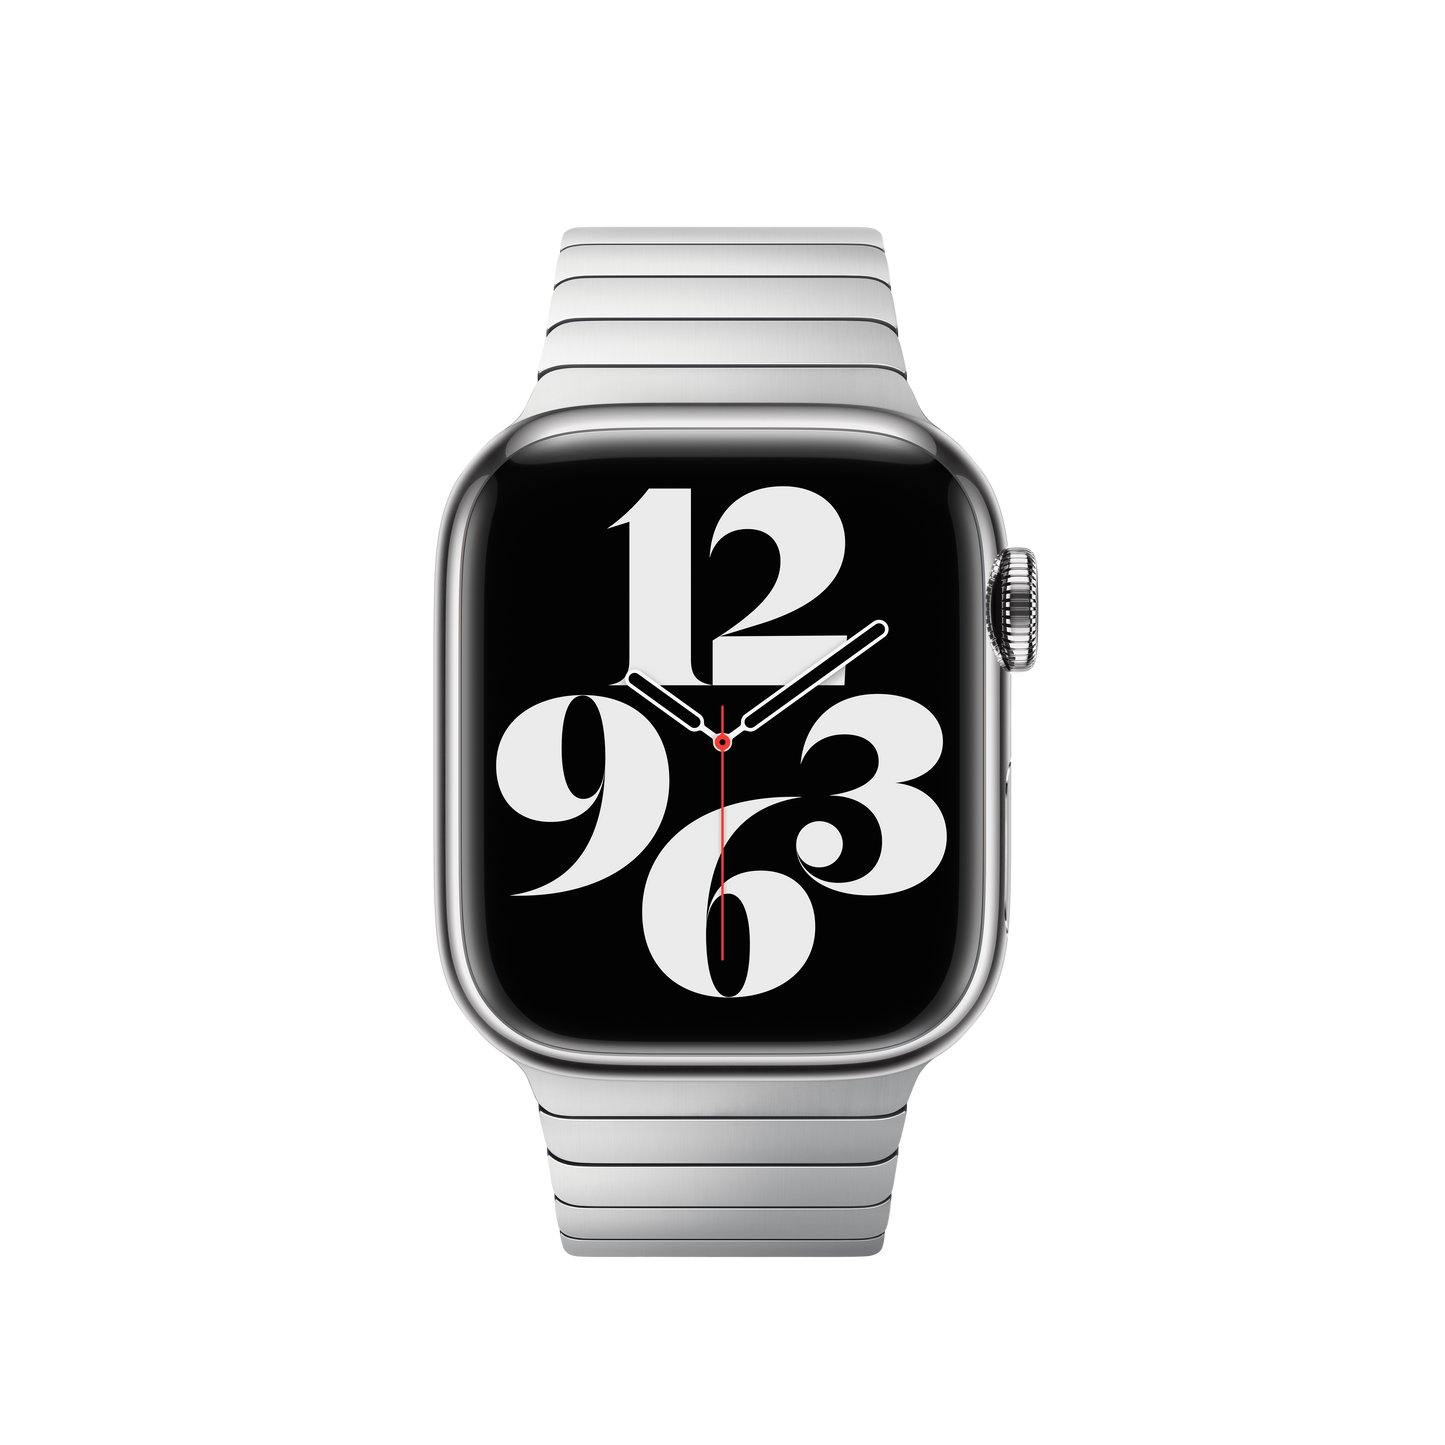 Pulsera de eslabones para el Apple Watch